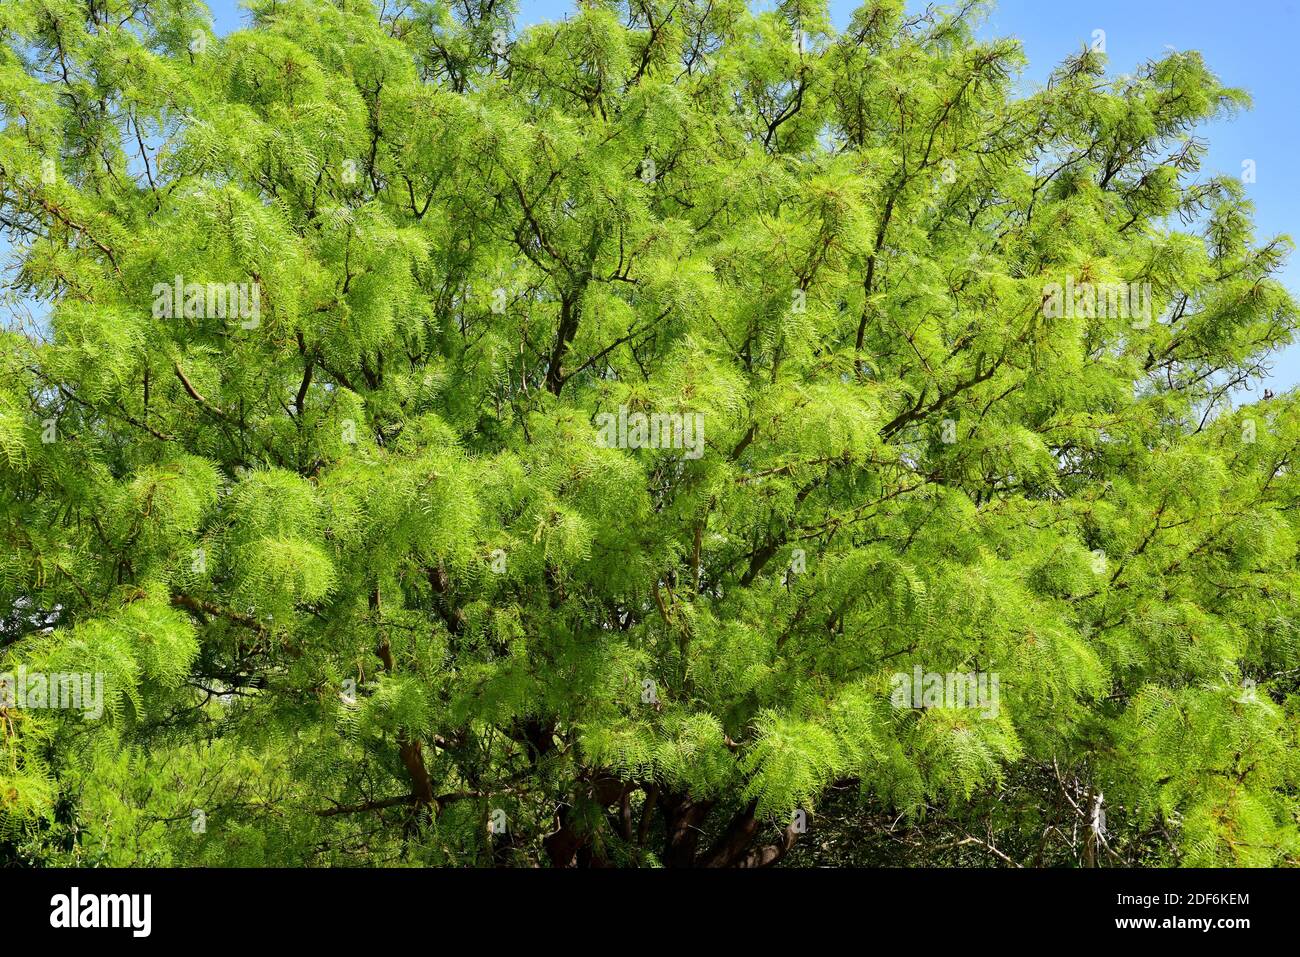 Chilenischer algarrobo oder chilenischer Mesquite (Prosopis chilensis) ist ein Deziduoud-Baum, der in Chile, Argentinien und Peru beheimatet ist. Stockfoto